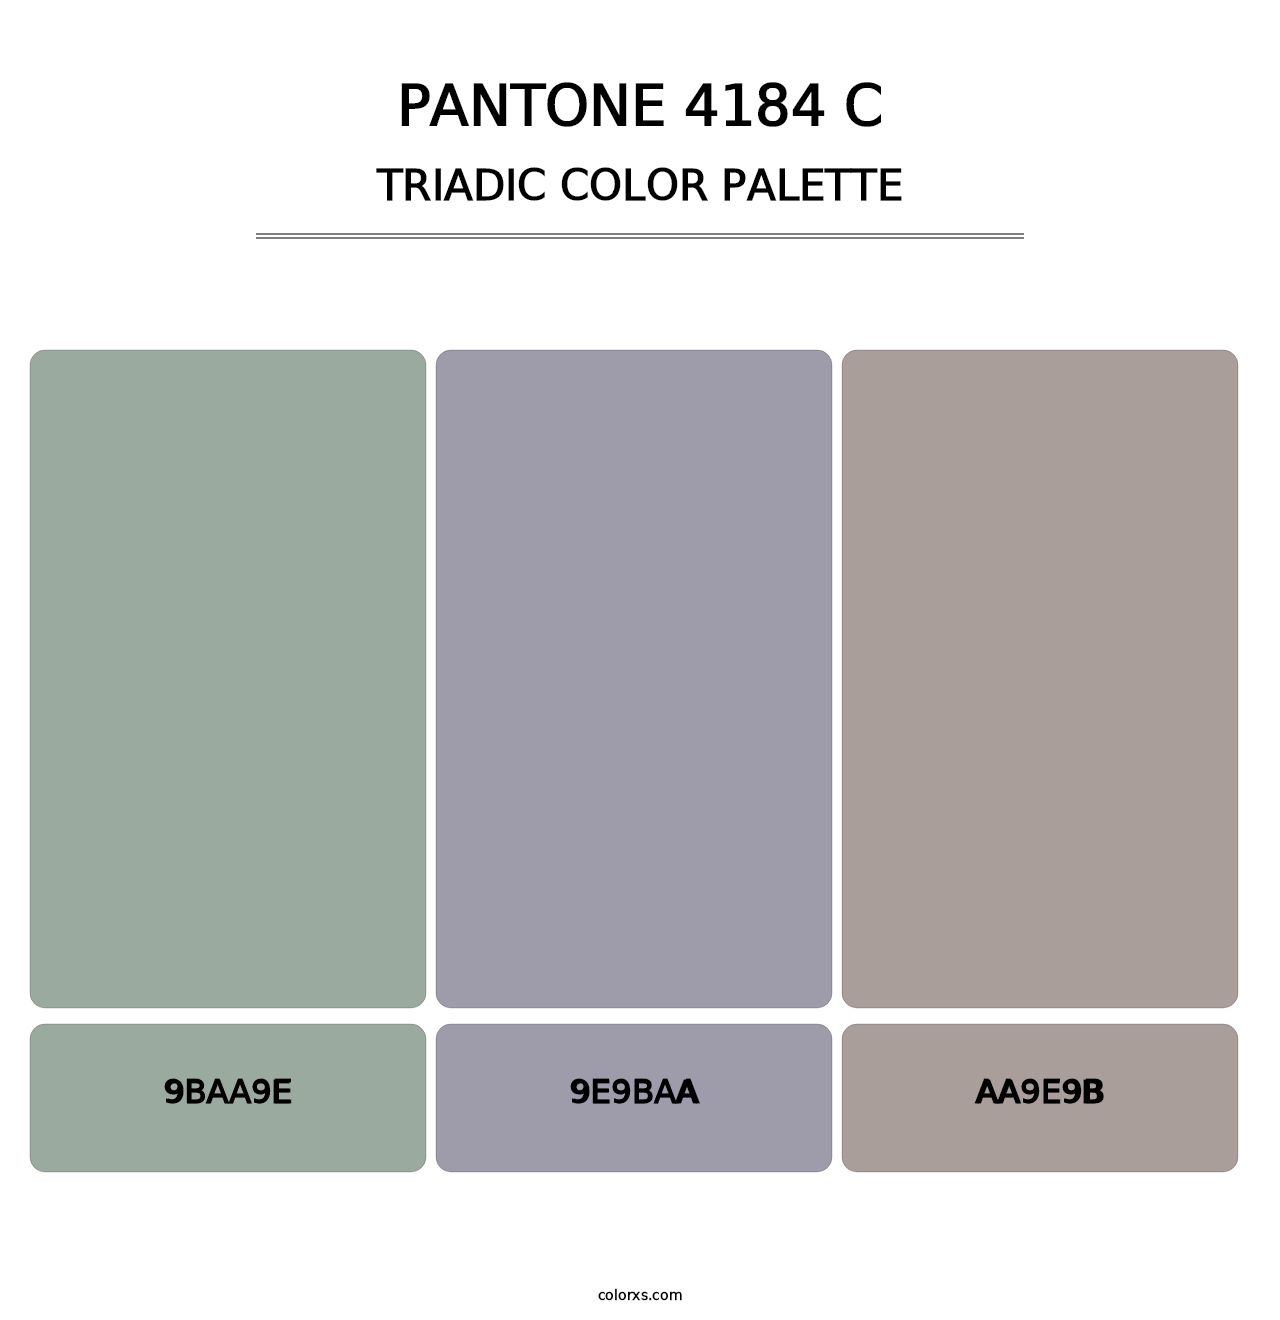 PANTONE 4184 C - Triadic Color Palette